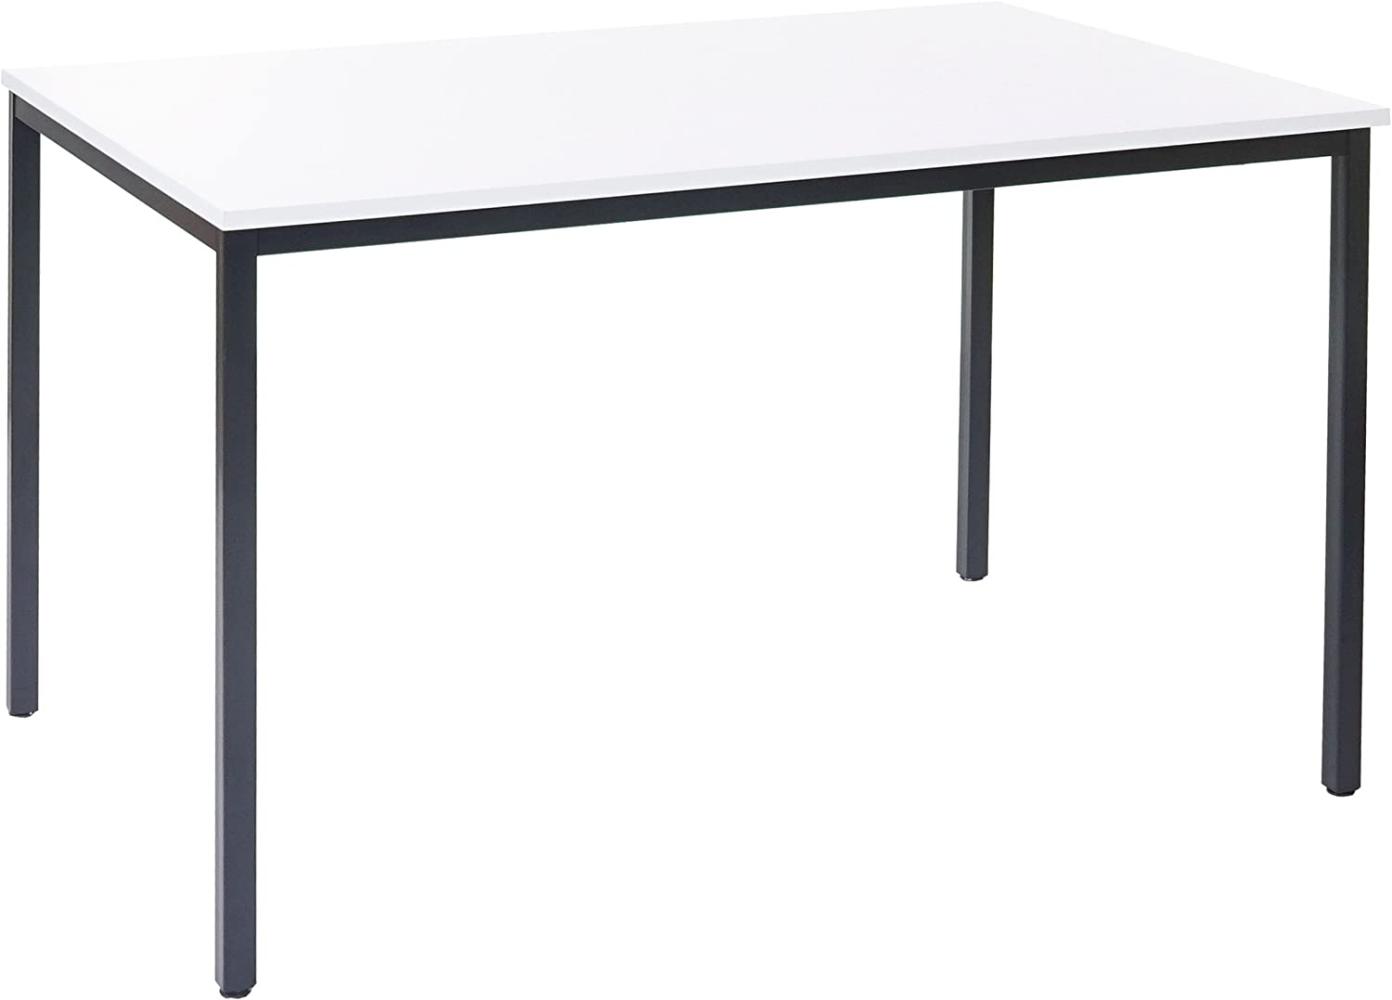 'Braila' Schreibtisch, MDF/ Stahl weiß, 75 x 120 x 80 cm Bild 1